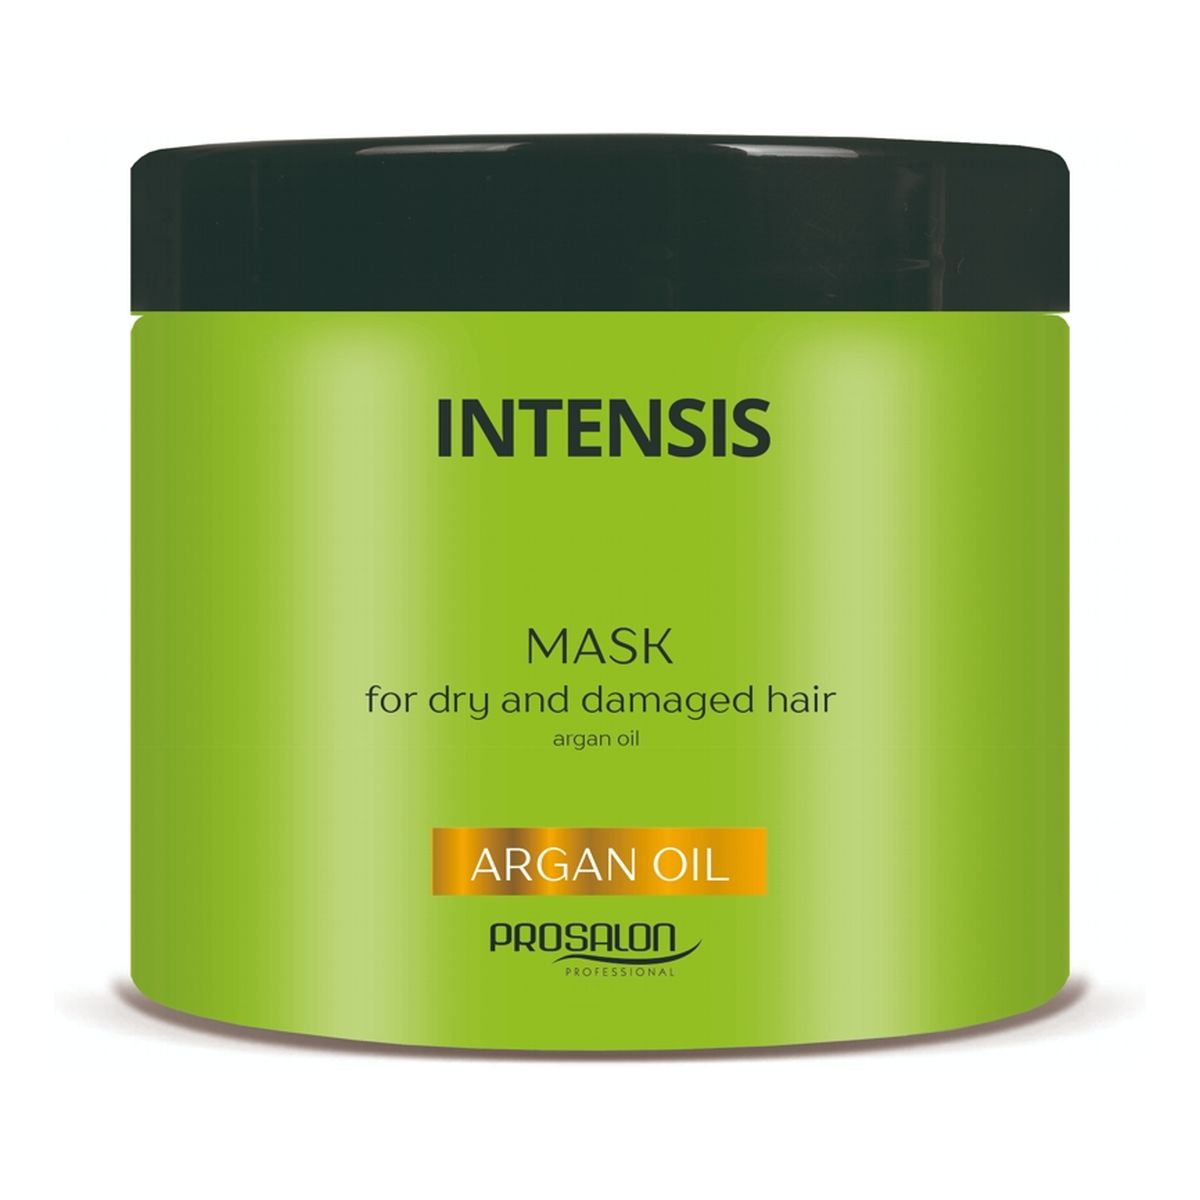 Chantal Profesional Prosalon Intensis Mask For Dry And Damaged Hair maska odżywcza z olejkiem arganowym 450g